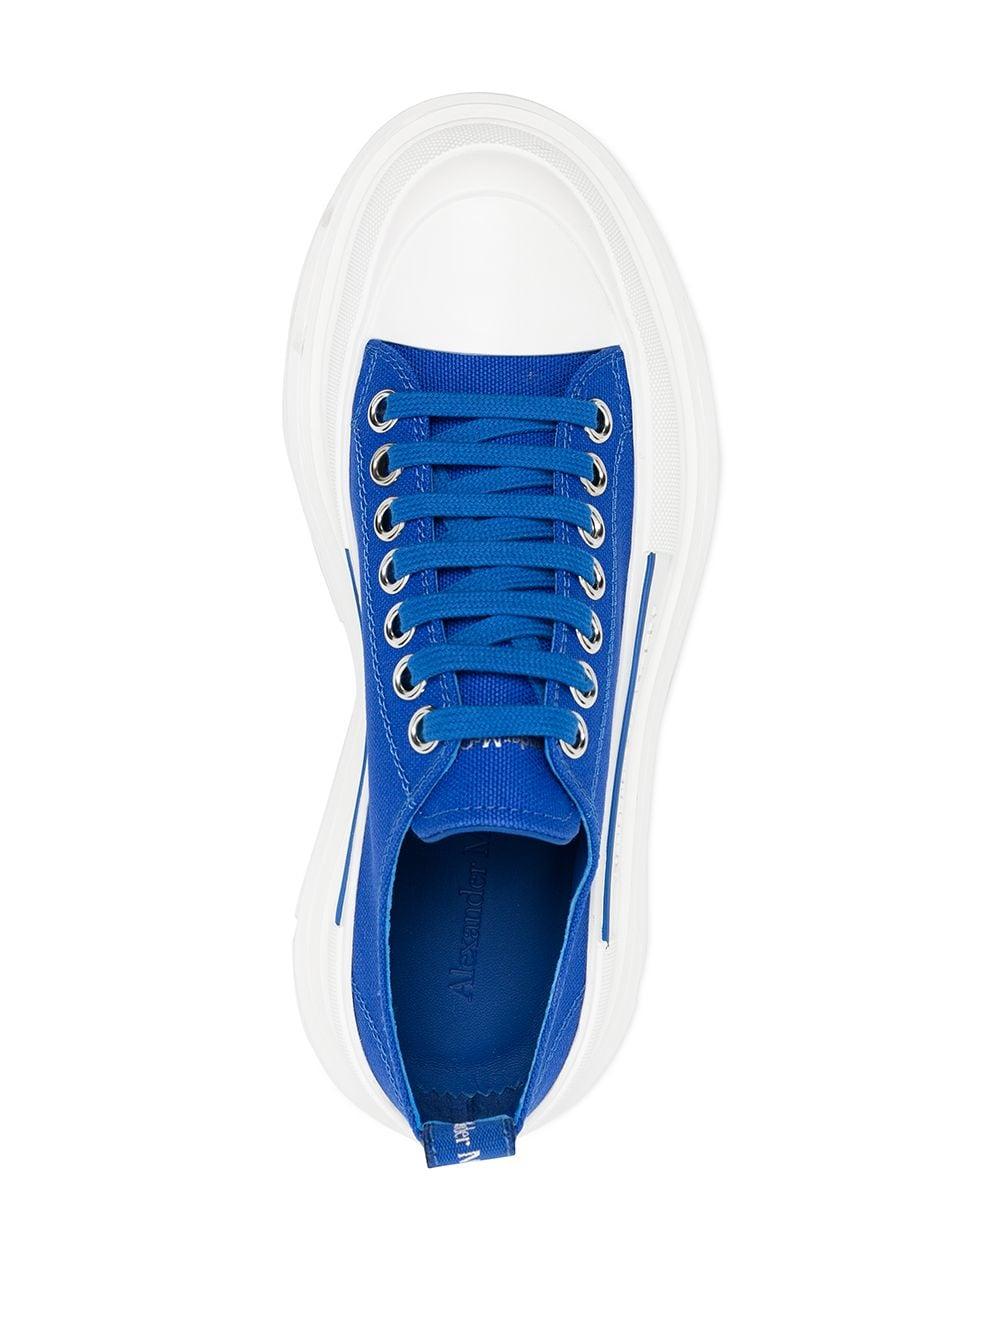 Alexander McQueen Tread Slick Sneakers in Blue - Lyst